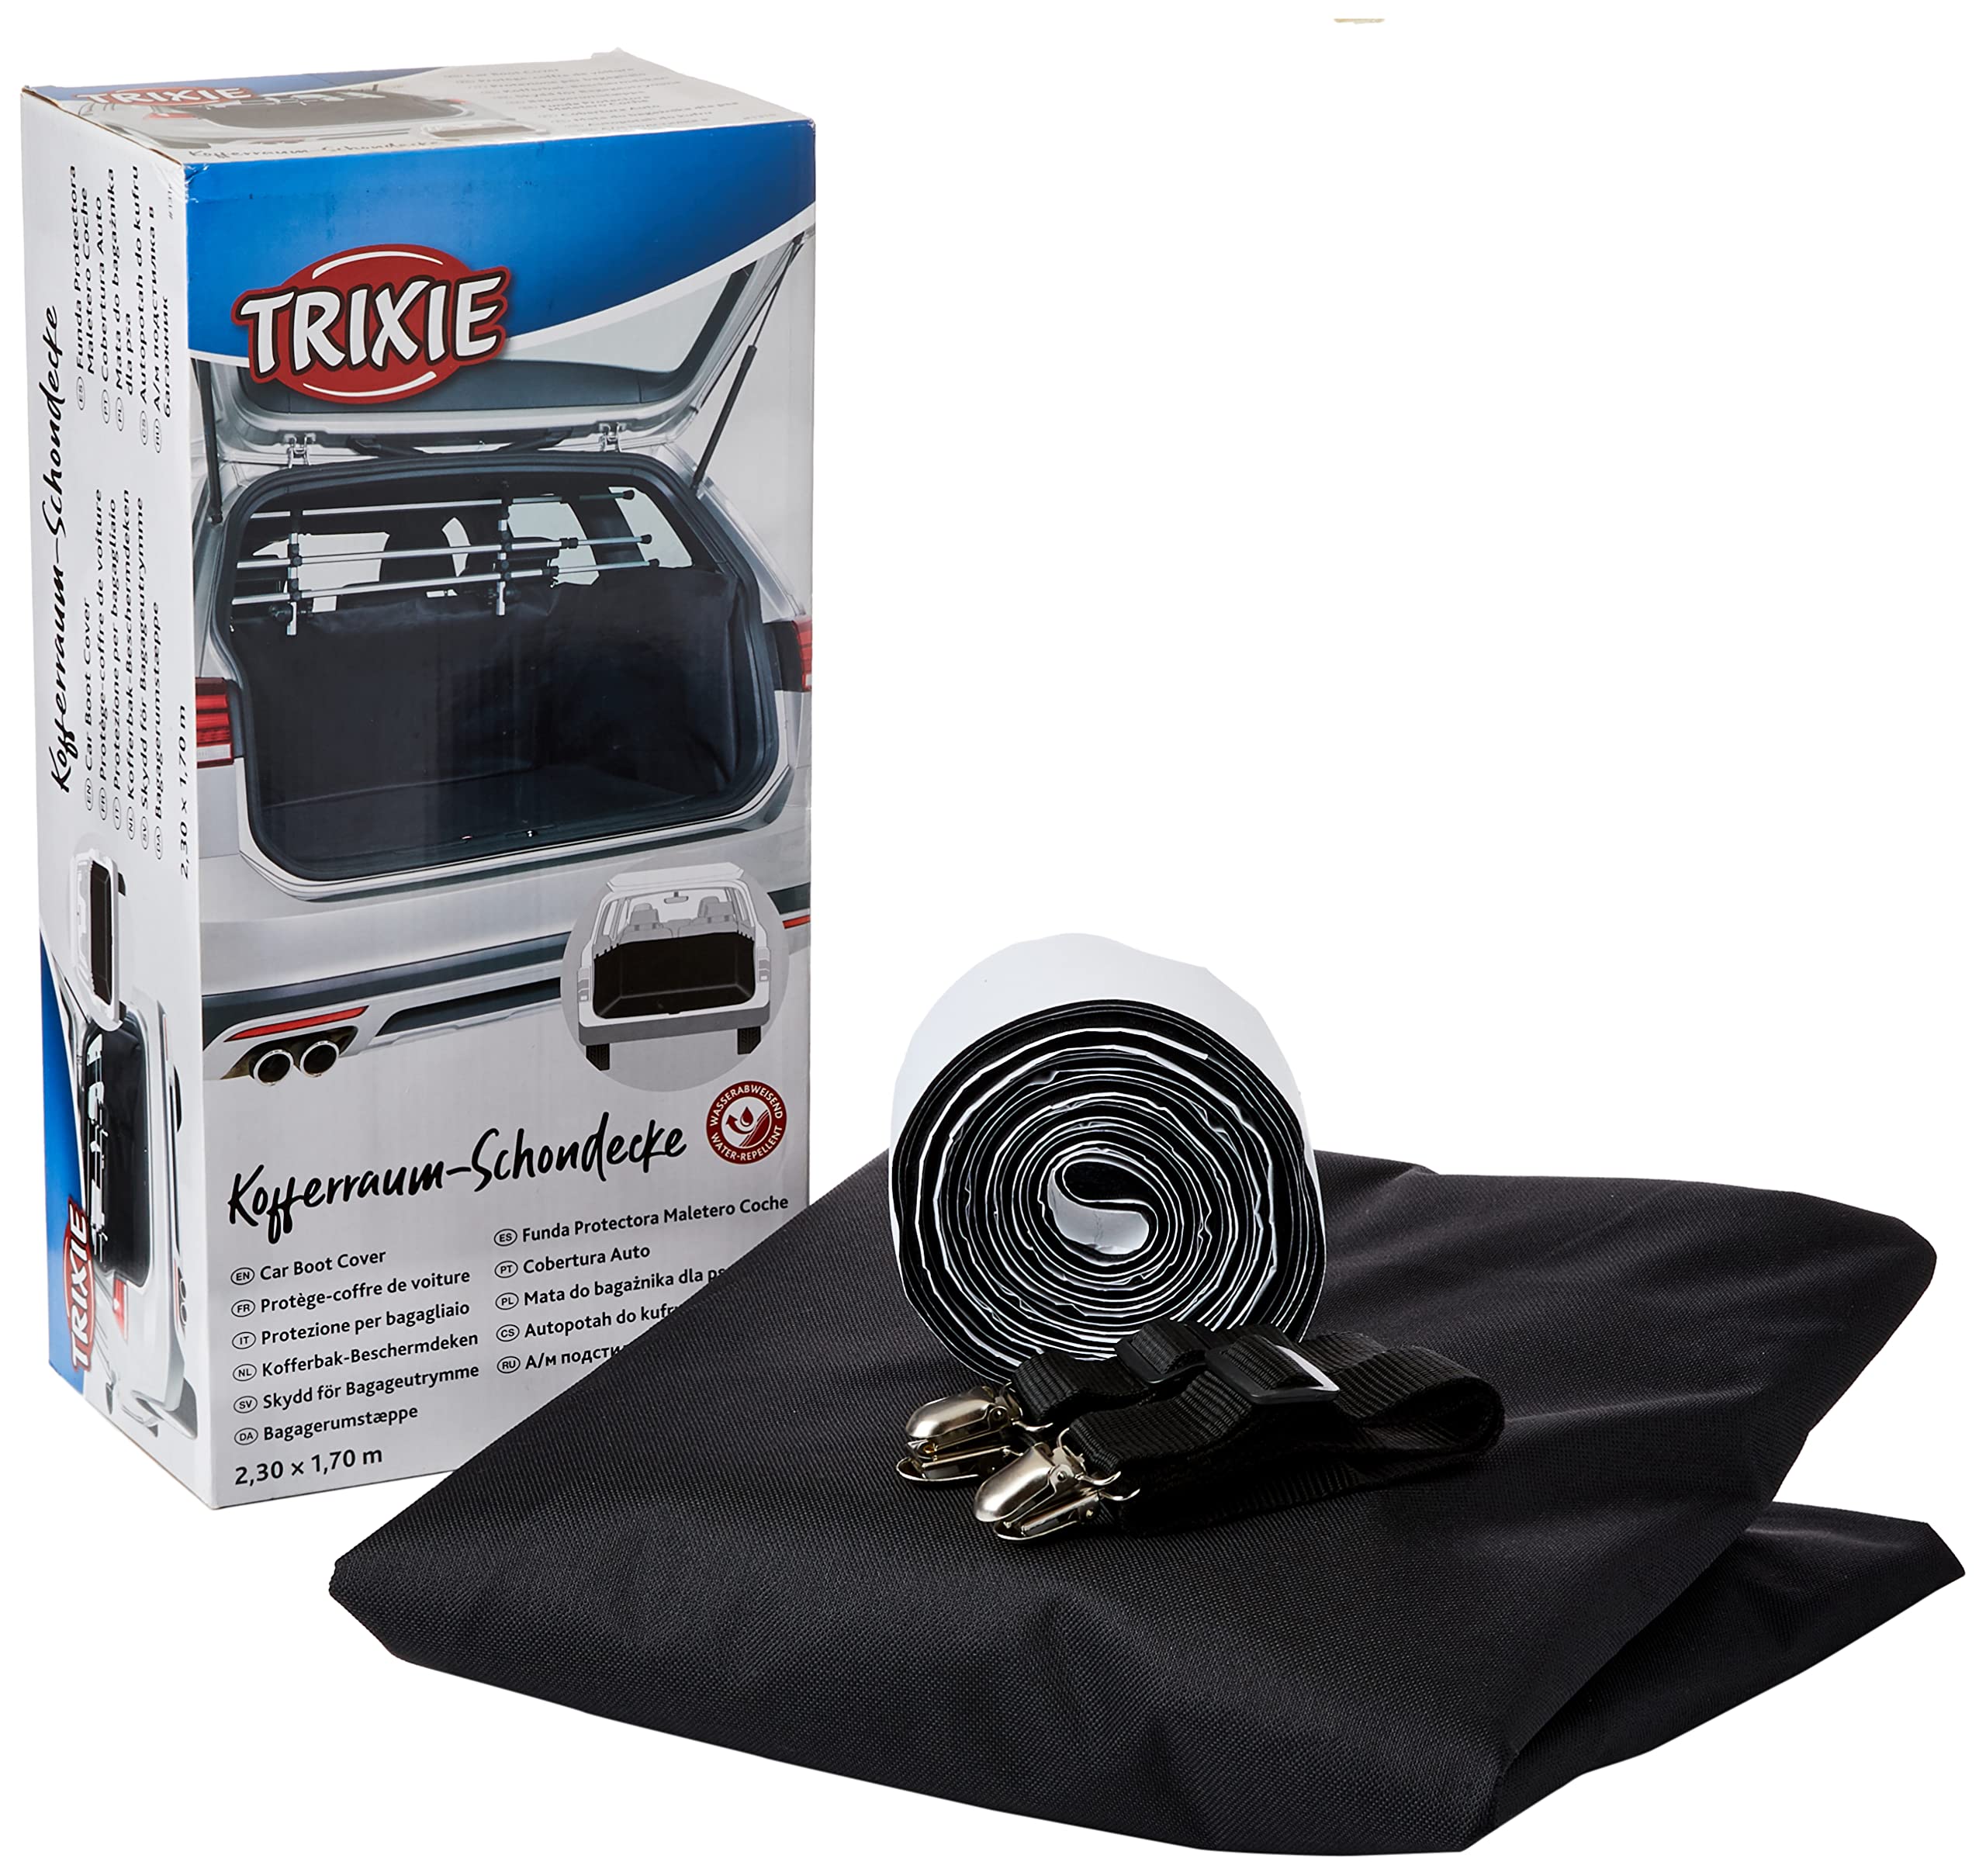 Trixie 1318 Kofferraum-Schondecke, 2,30 × 1,70 m, schwarz